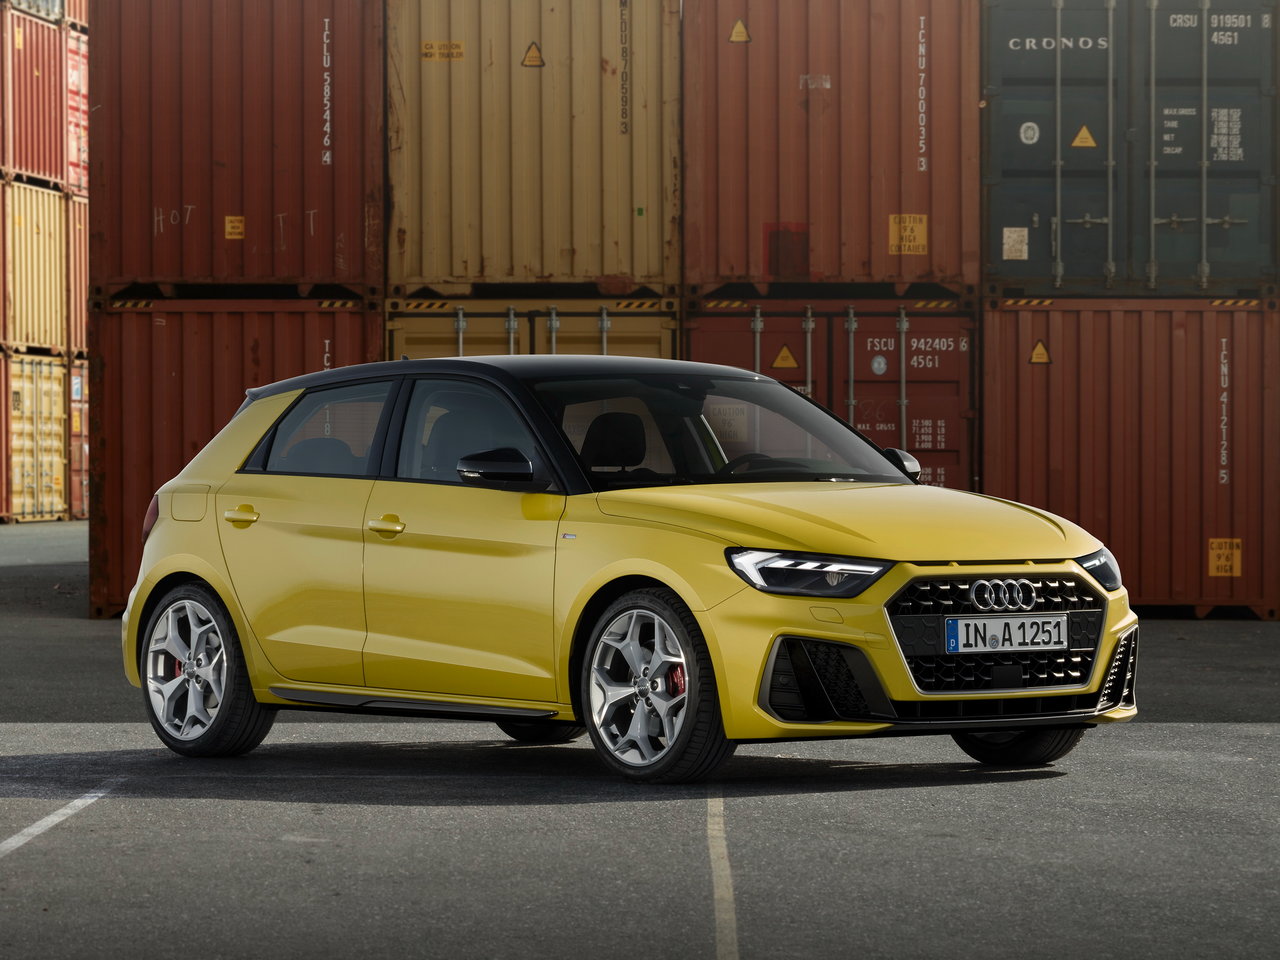 Audi A1 Sportback - обзор технические характеристики цены | Официальный сайт Audi